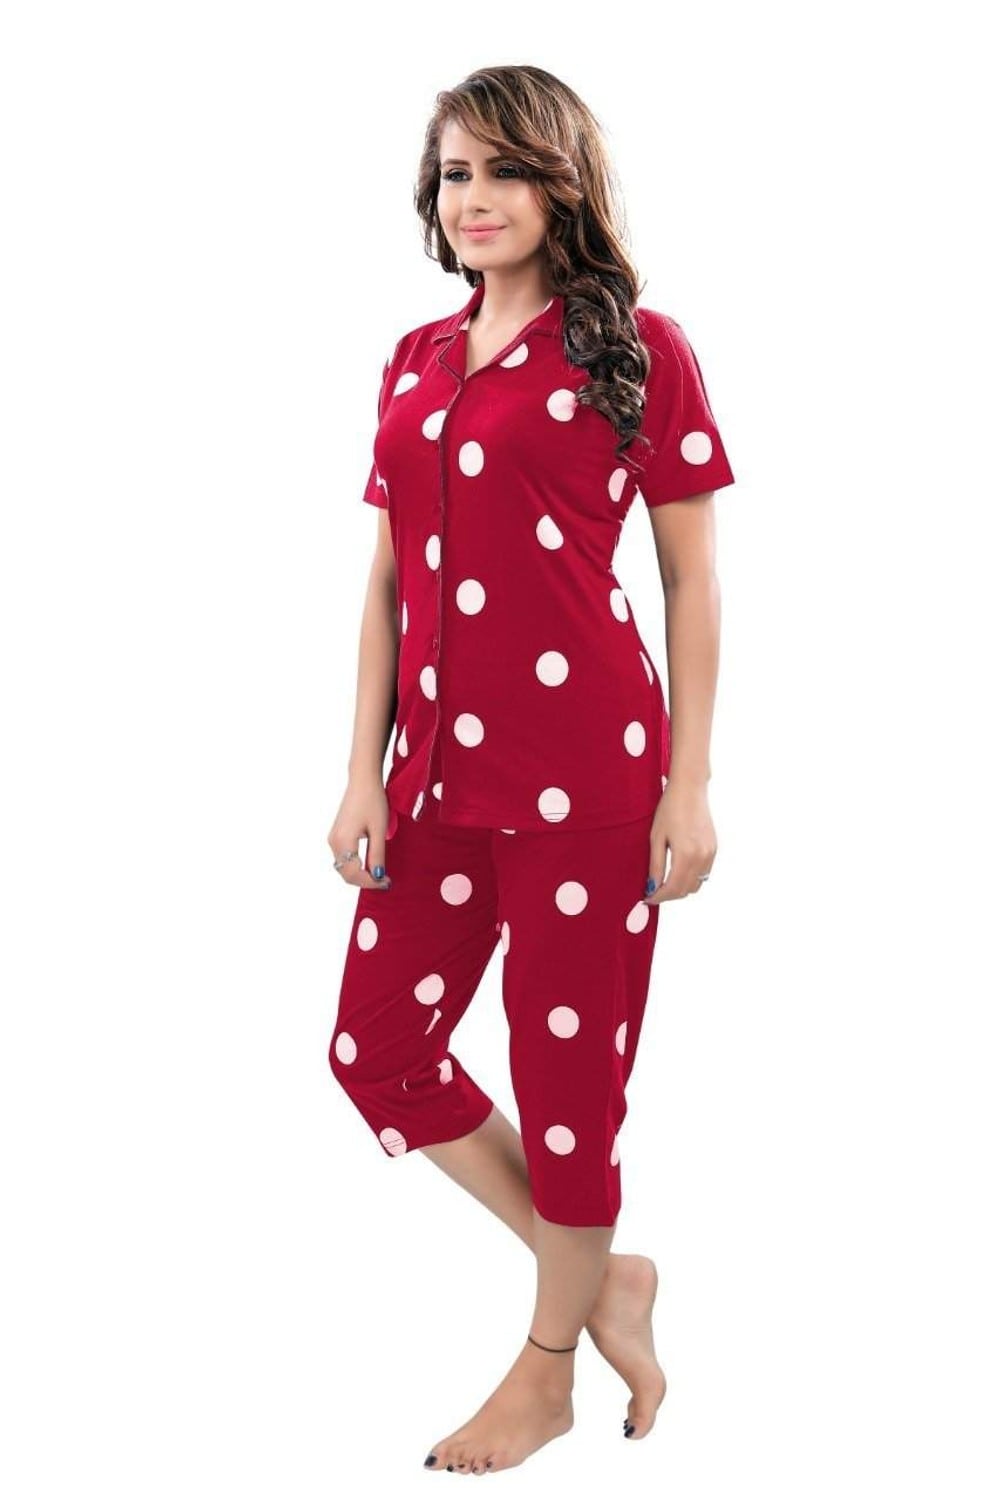 Pierre Donna Women's Cotton Pajama set With Pants - Women Sleepwear Red Color AVL - Dealz Souq